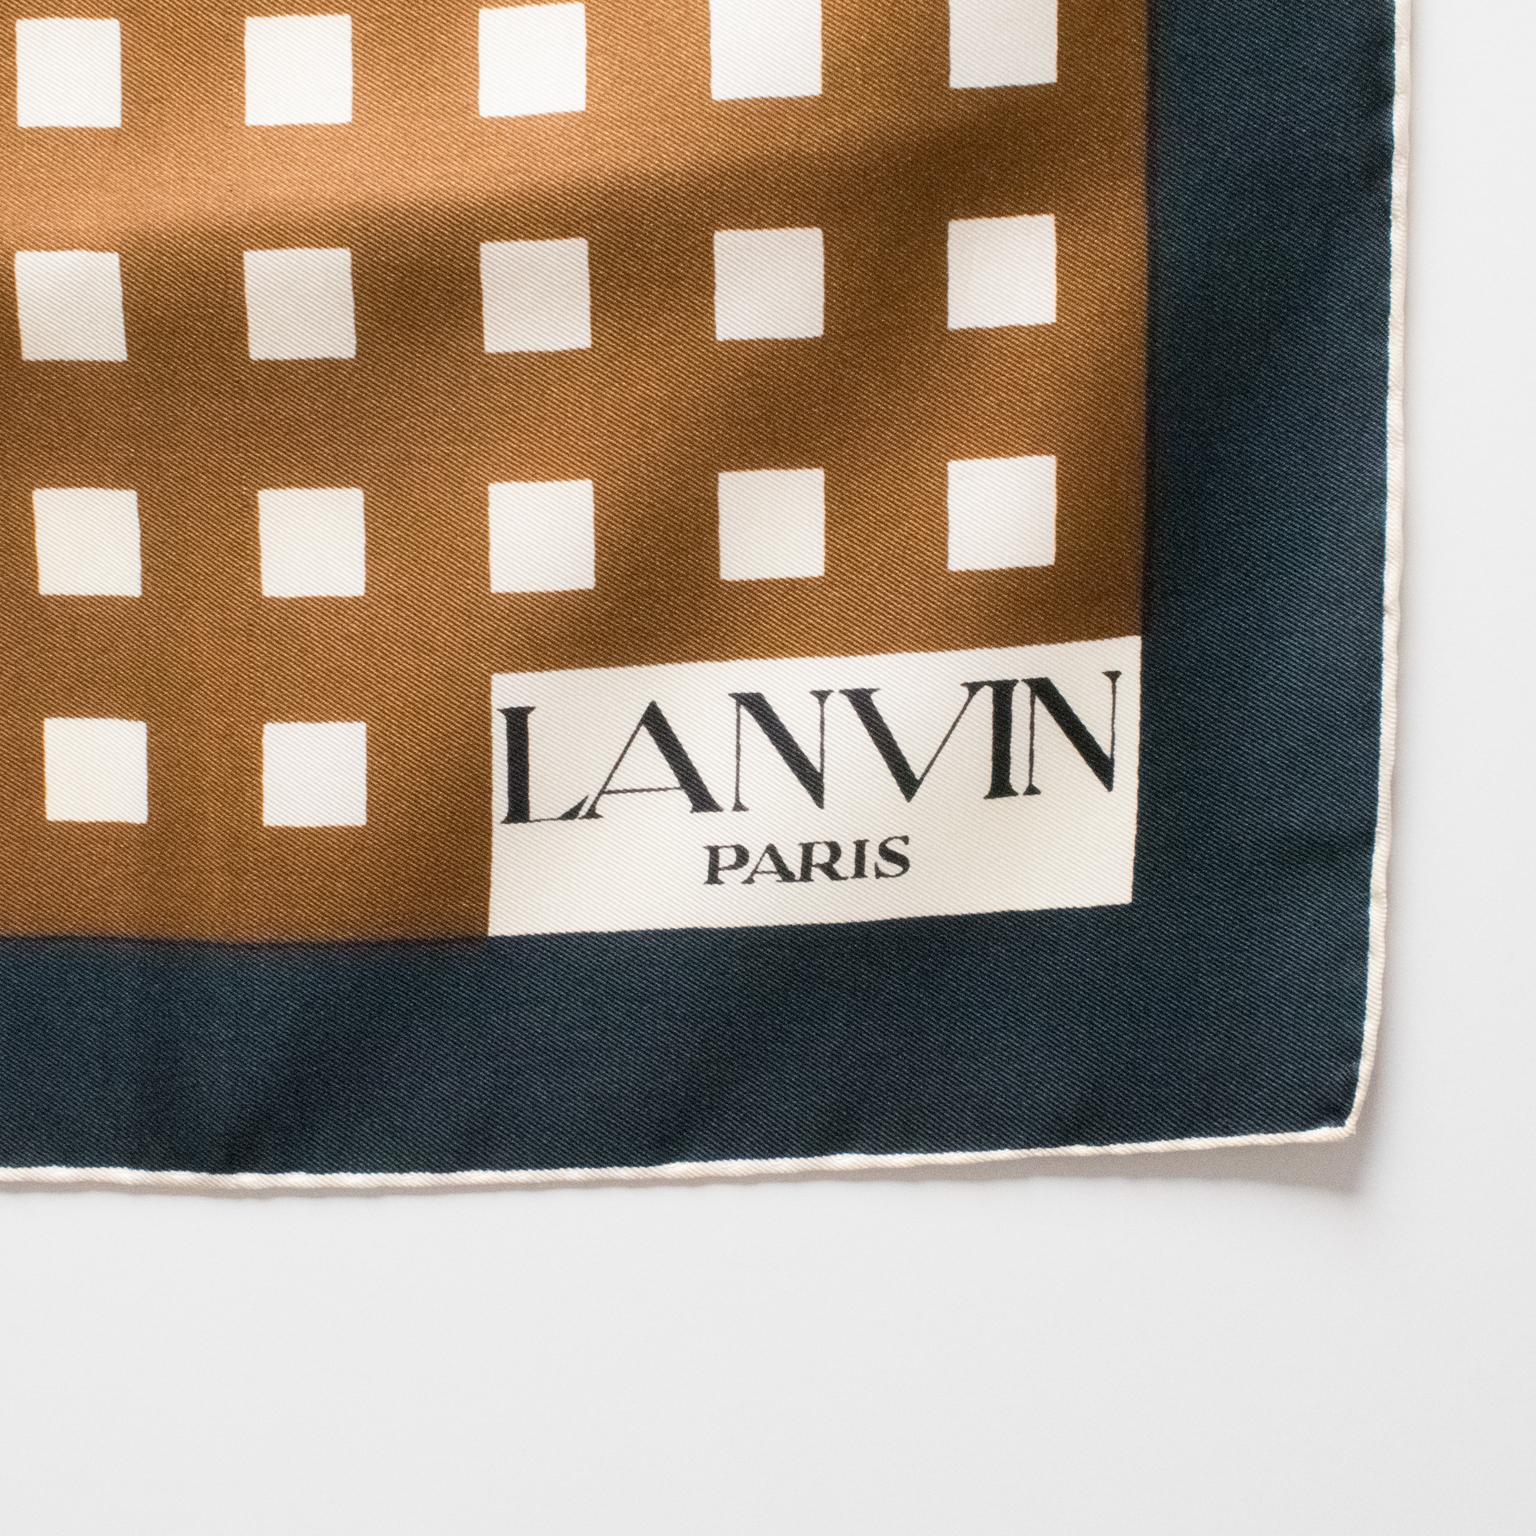 Lanvin Paris Seidenschal 1970er Jahre Geometrischer Druck in Kamel- und Brauntönen für Damen oder Herren im Angebot